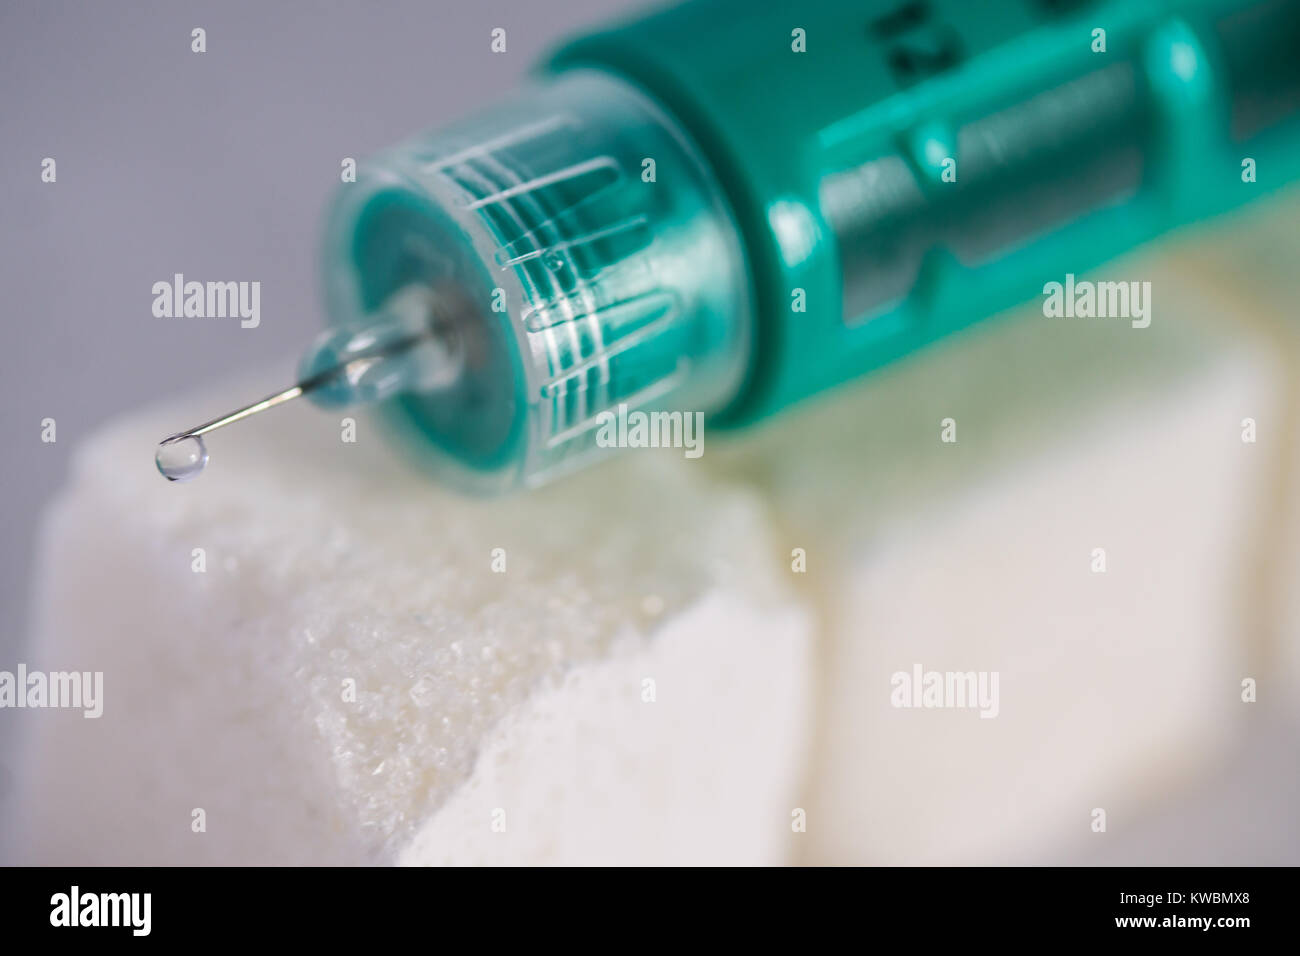 Concepto de imagen Diabetes problemas con pluma de insulina para diabéticos en la parte superior de terrones de azúcar Foto de stock